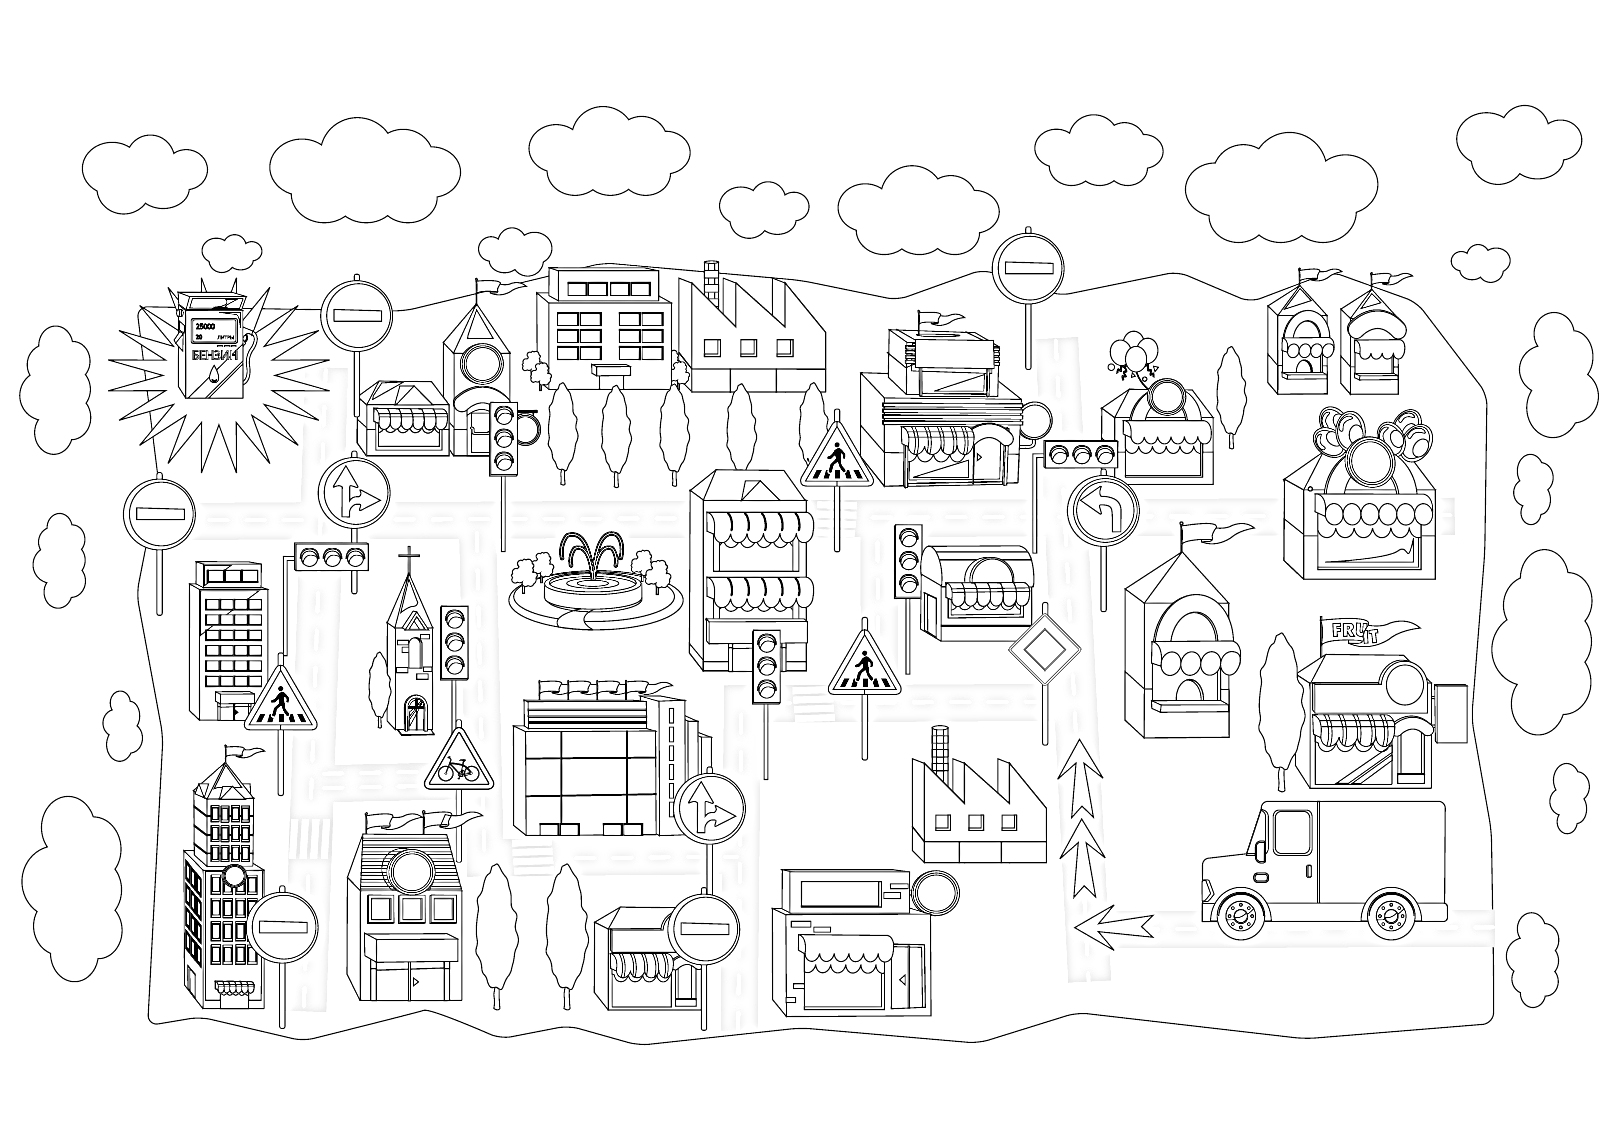 Городская сцена с различными зданиями и транспортом, включая дома, заводы, грузовики, грузовые поезда, магазины, парки с фонтанами и дорожные знаки